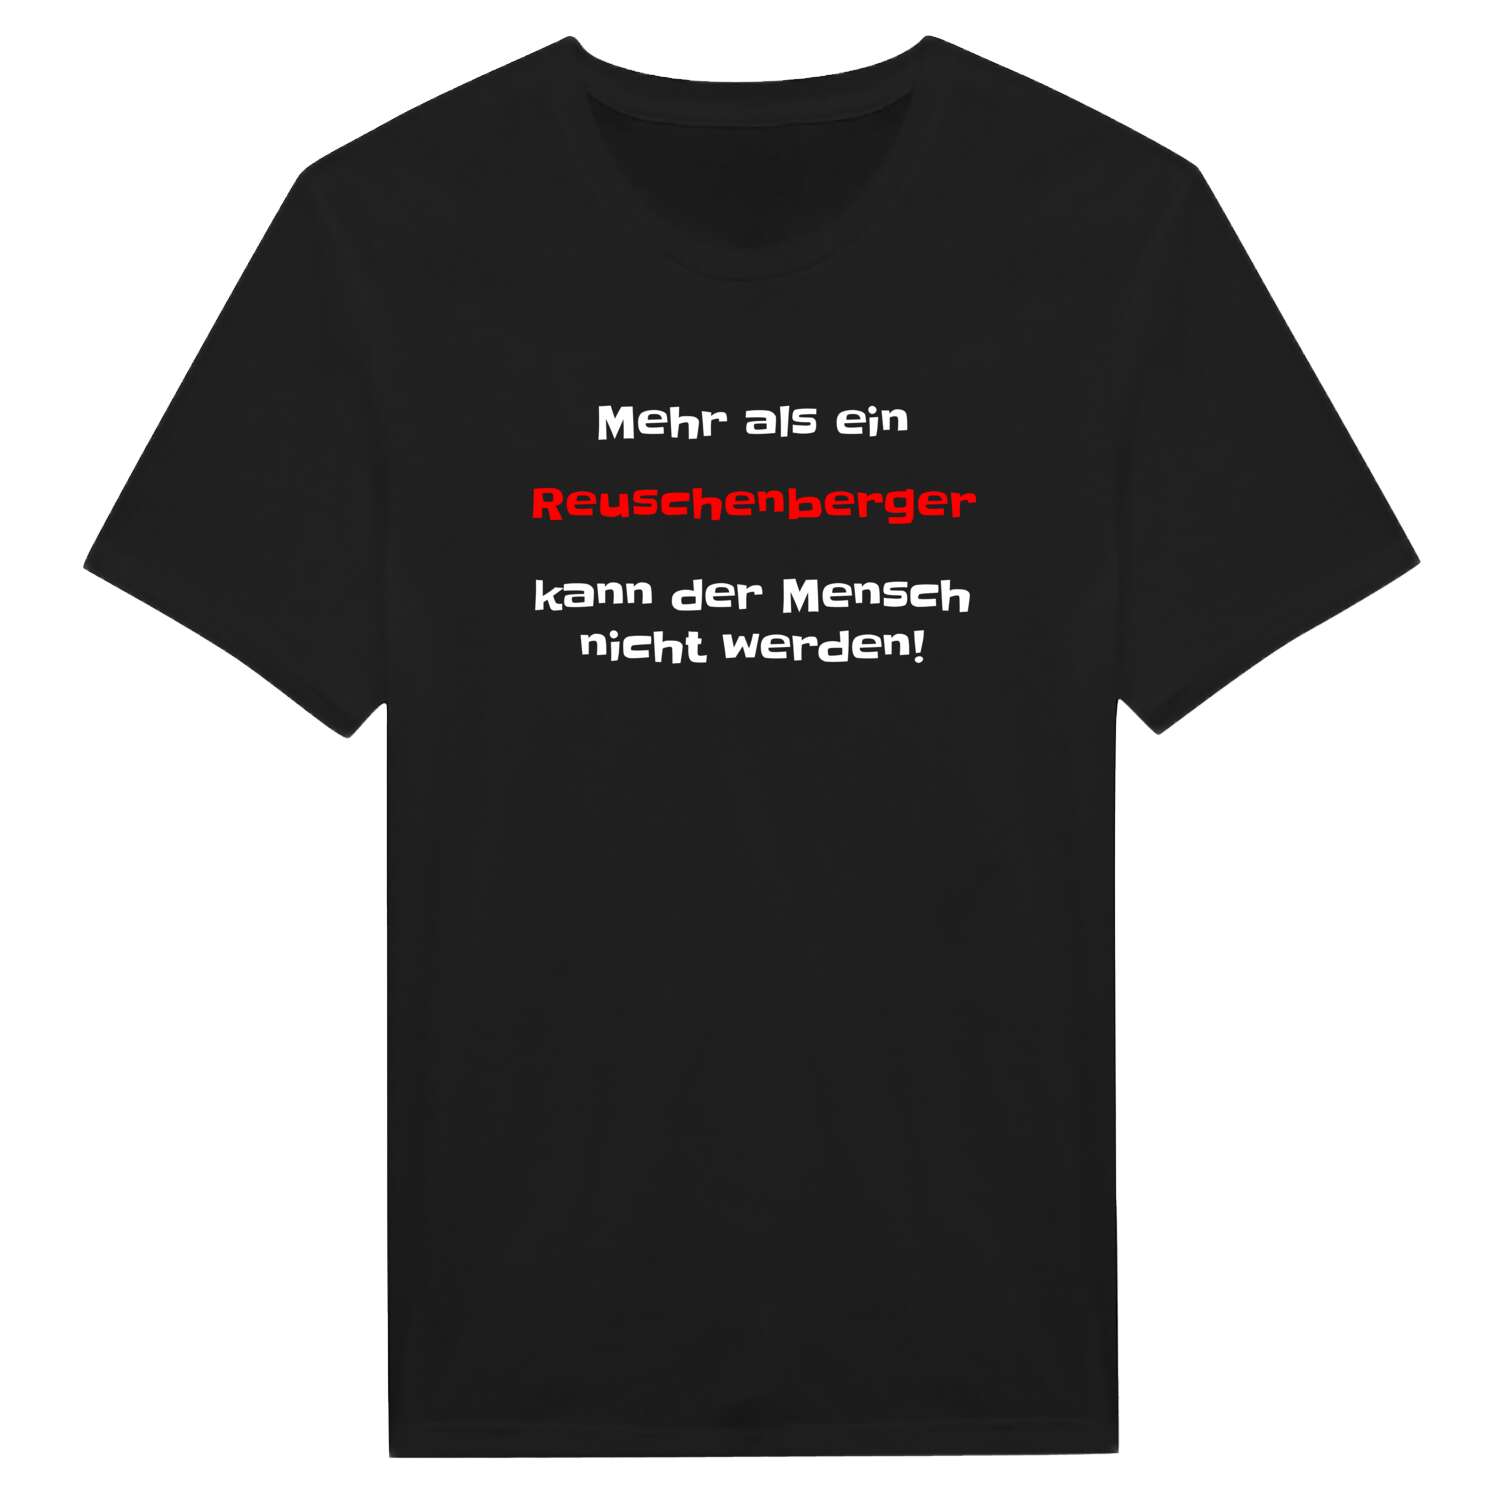 Reuschenberg T-Shirt »Mehr als ein«